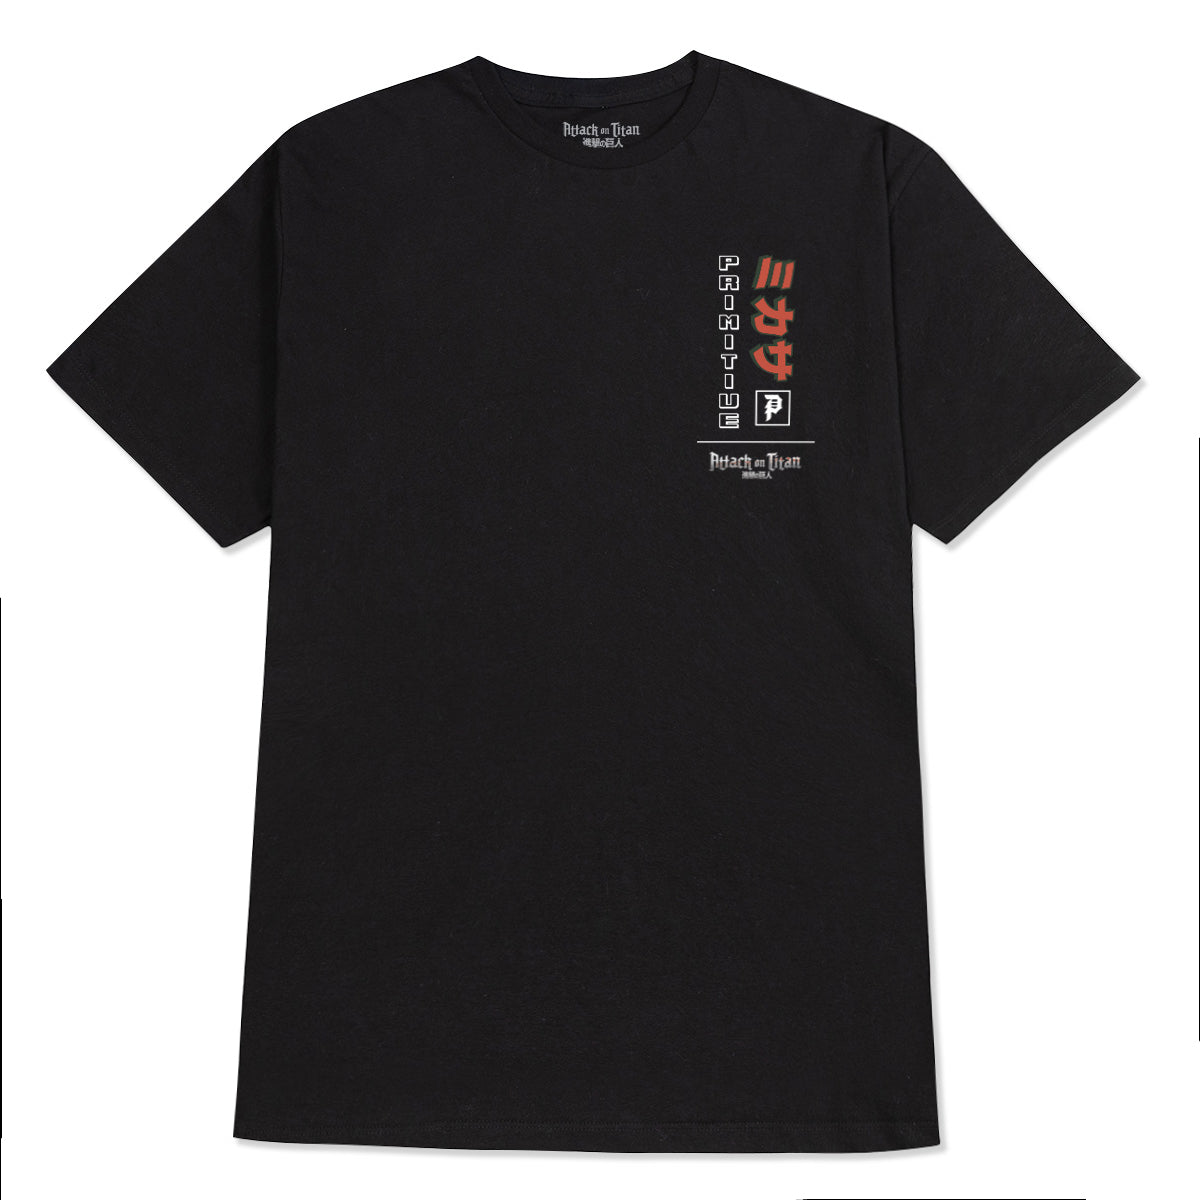 Primitive x Titans Mikasa T-Shirt - Black image 2